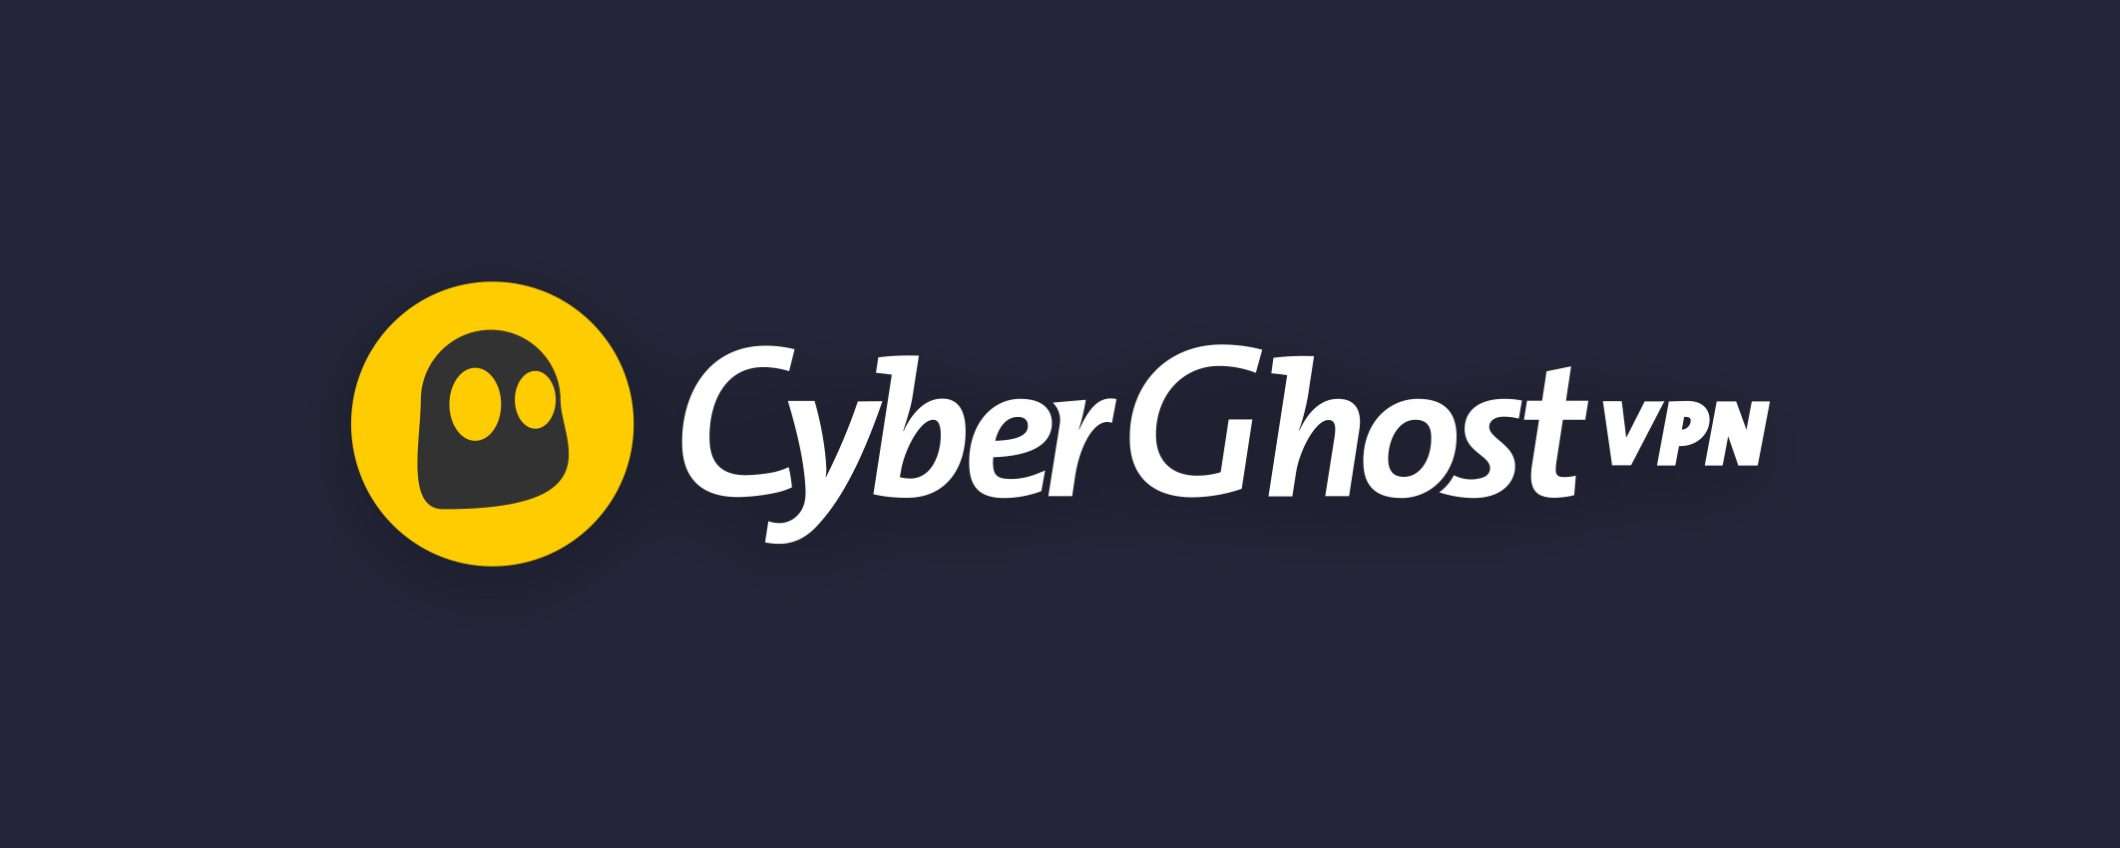 Continua la promo estiva di Cyberghost: VPN a 2€/mese + 4 mesi extra gratis